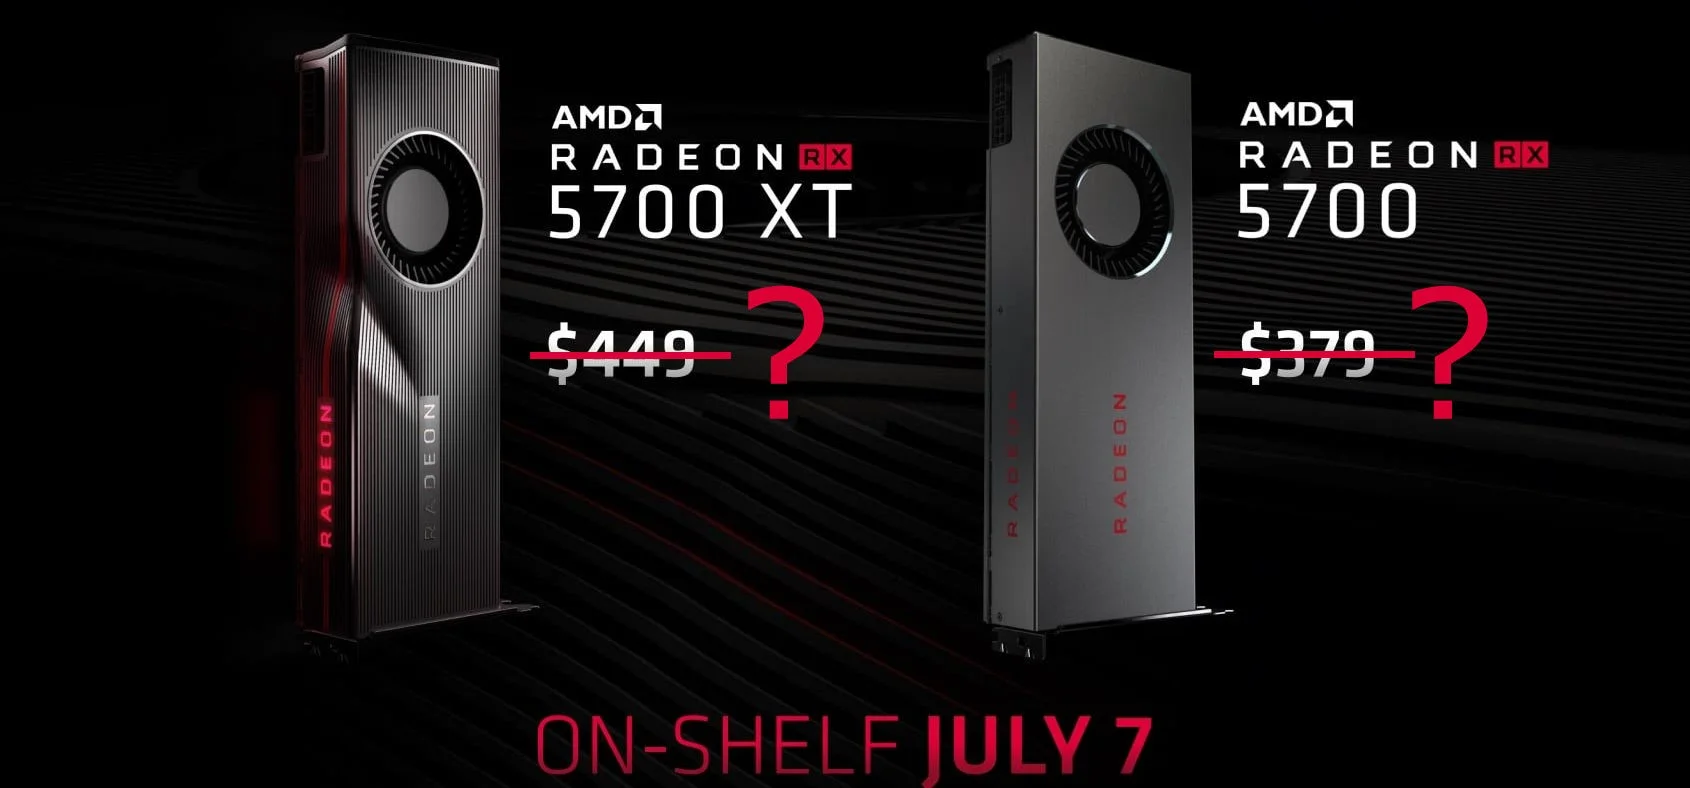 СМИ: AMD снижает цены на серию Radeon RX 5700 ещё до начала продаж - фото 1